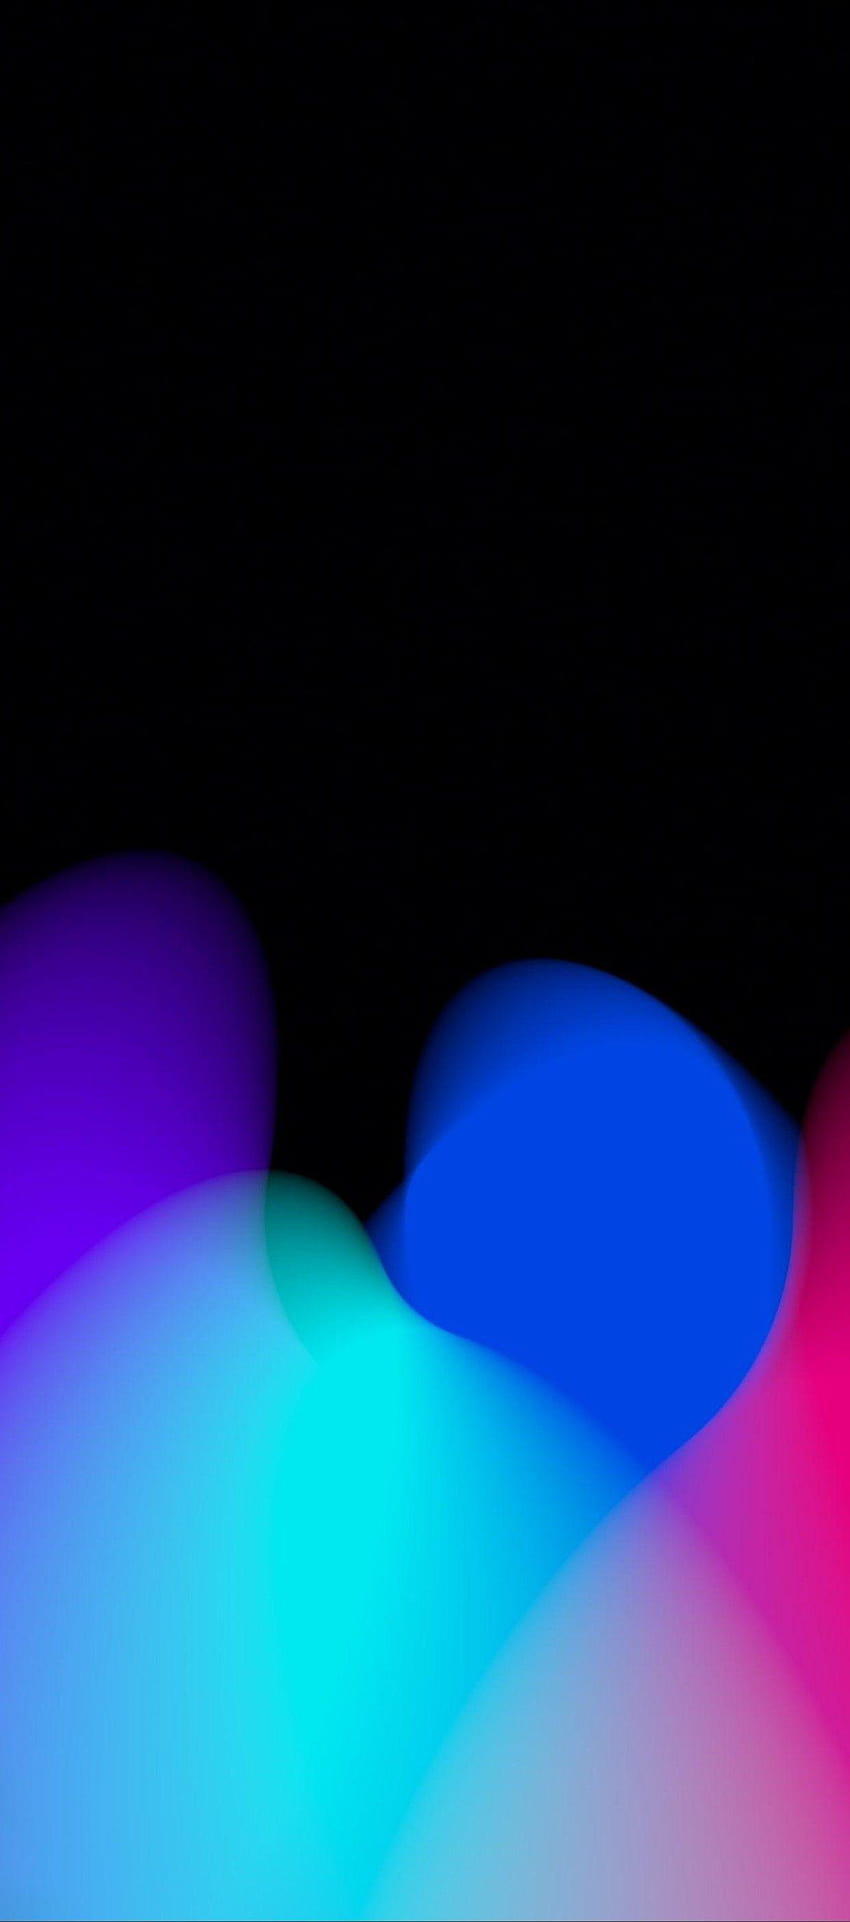 iOS 11, iPhone X, preto, vermelho, roxo, azul, limpo, simples, abstrato, iluminação azul e vermelha Papel de parede de celular HD